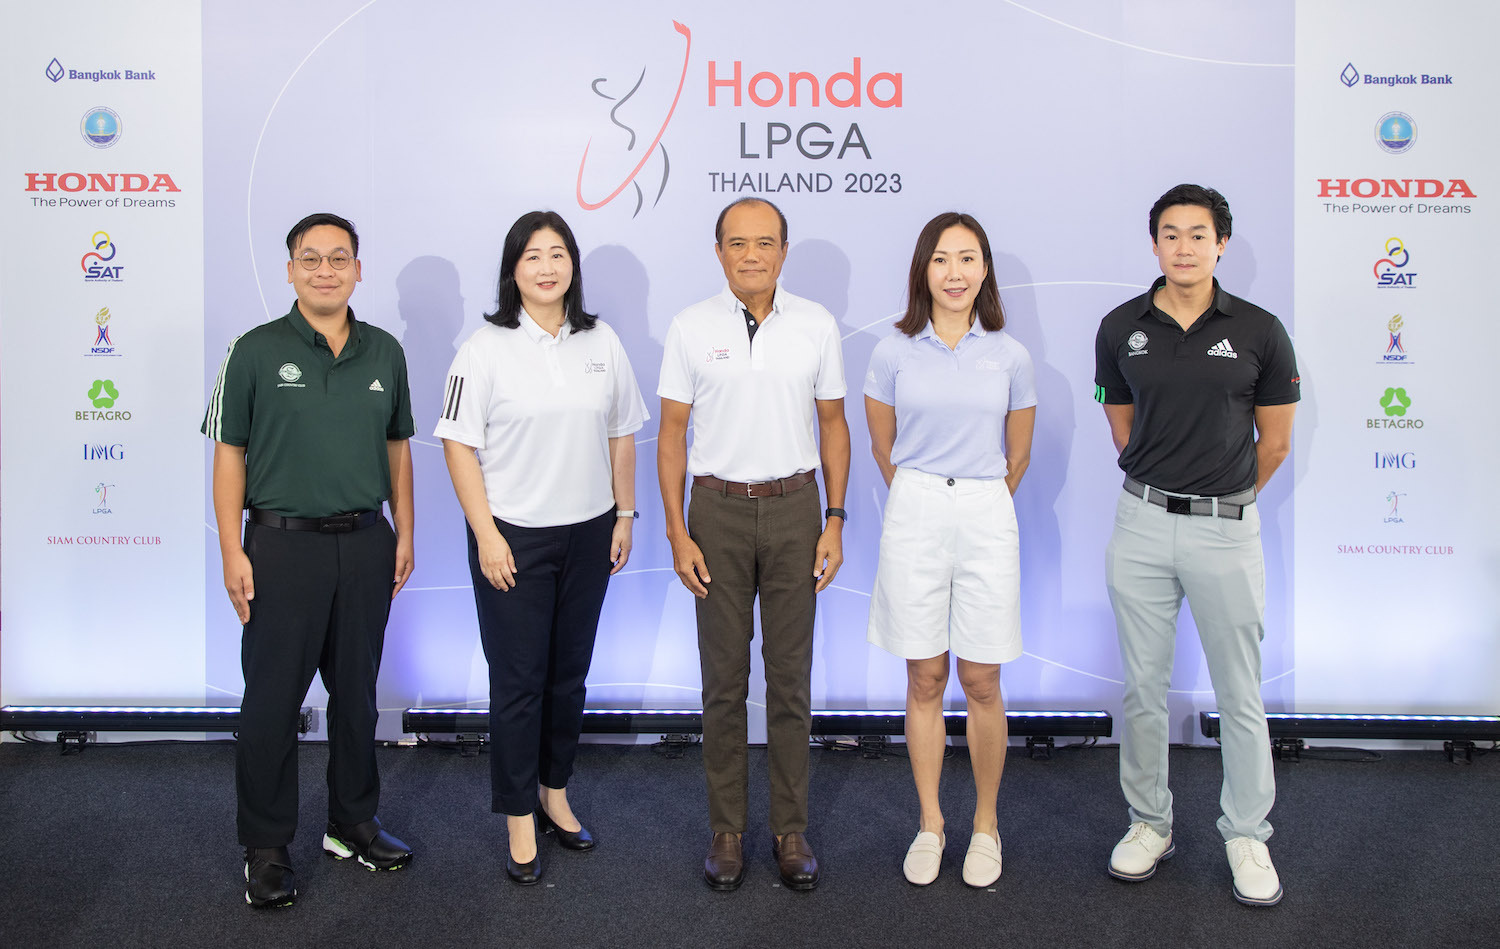 Honda LPGA Thailand